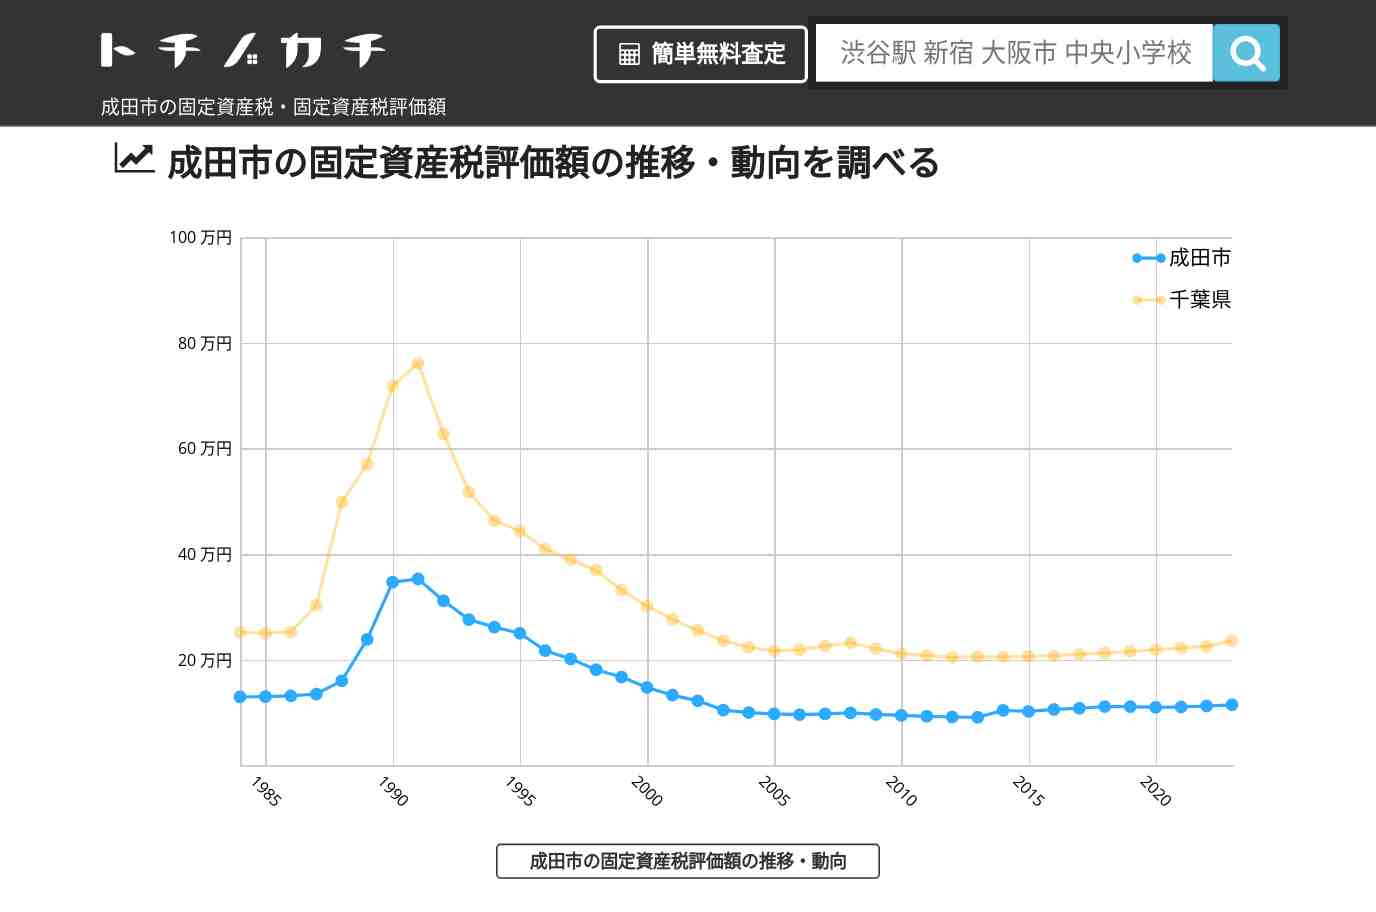 八生小学校(千葉県 成田市)周辺の固定資産税・固定資産税評価額 | トチノカチ